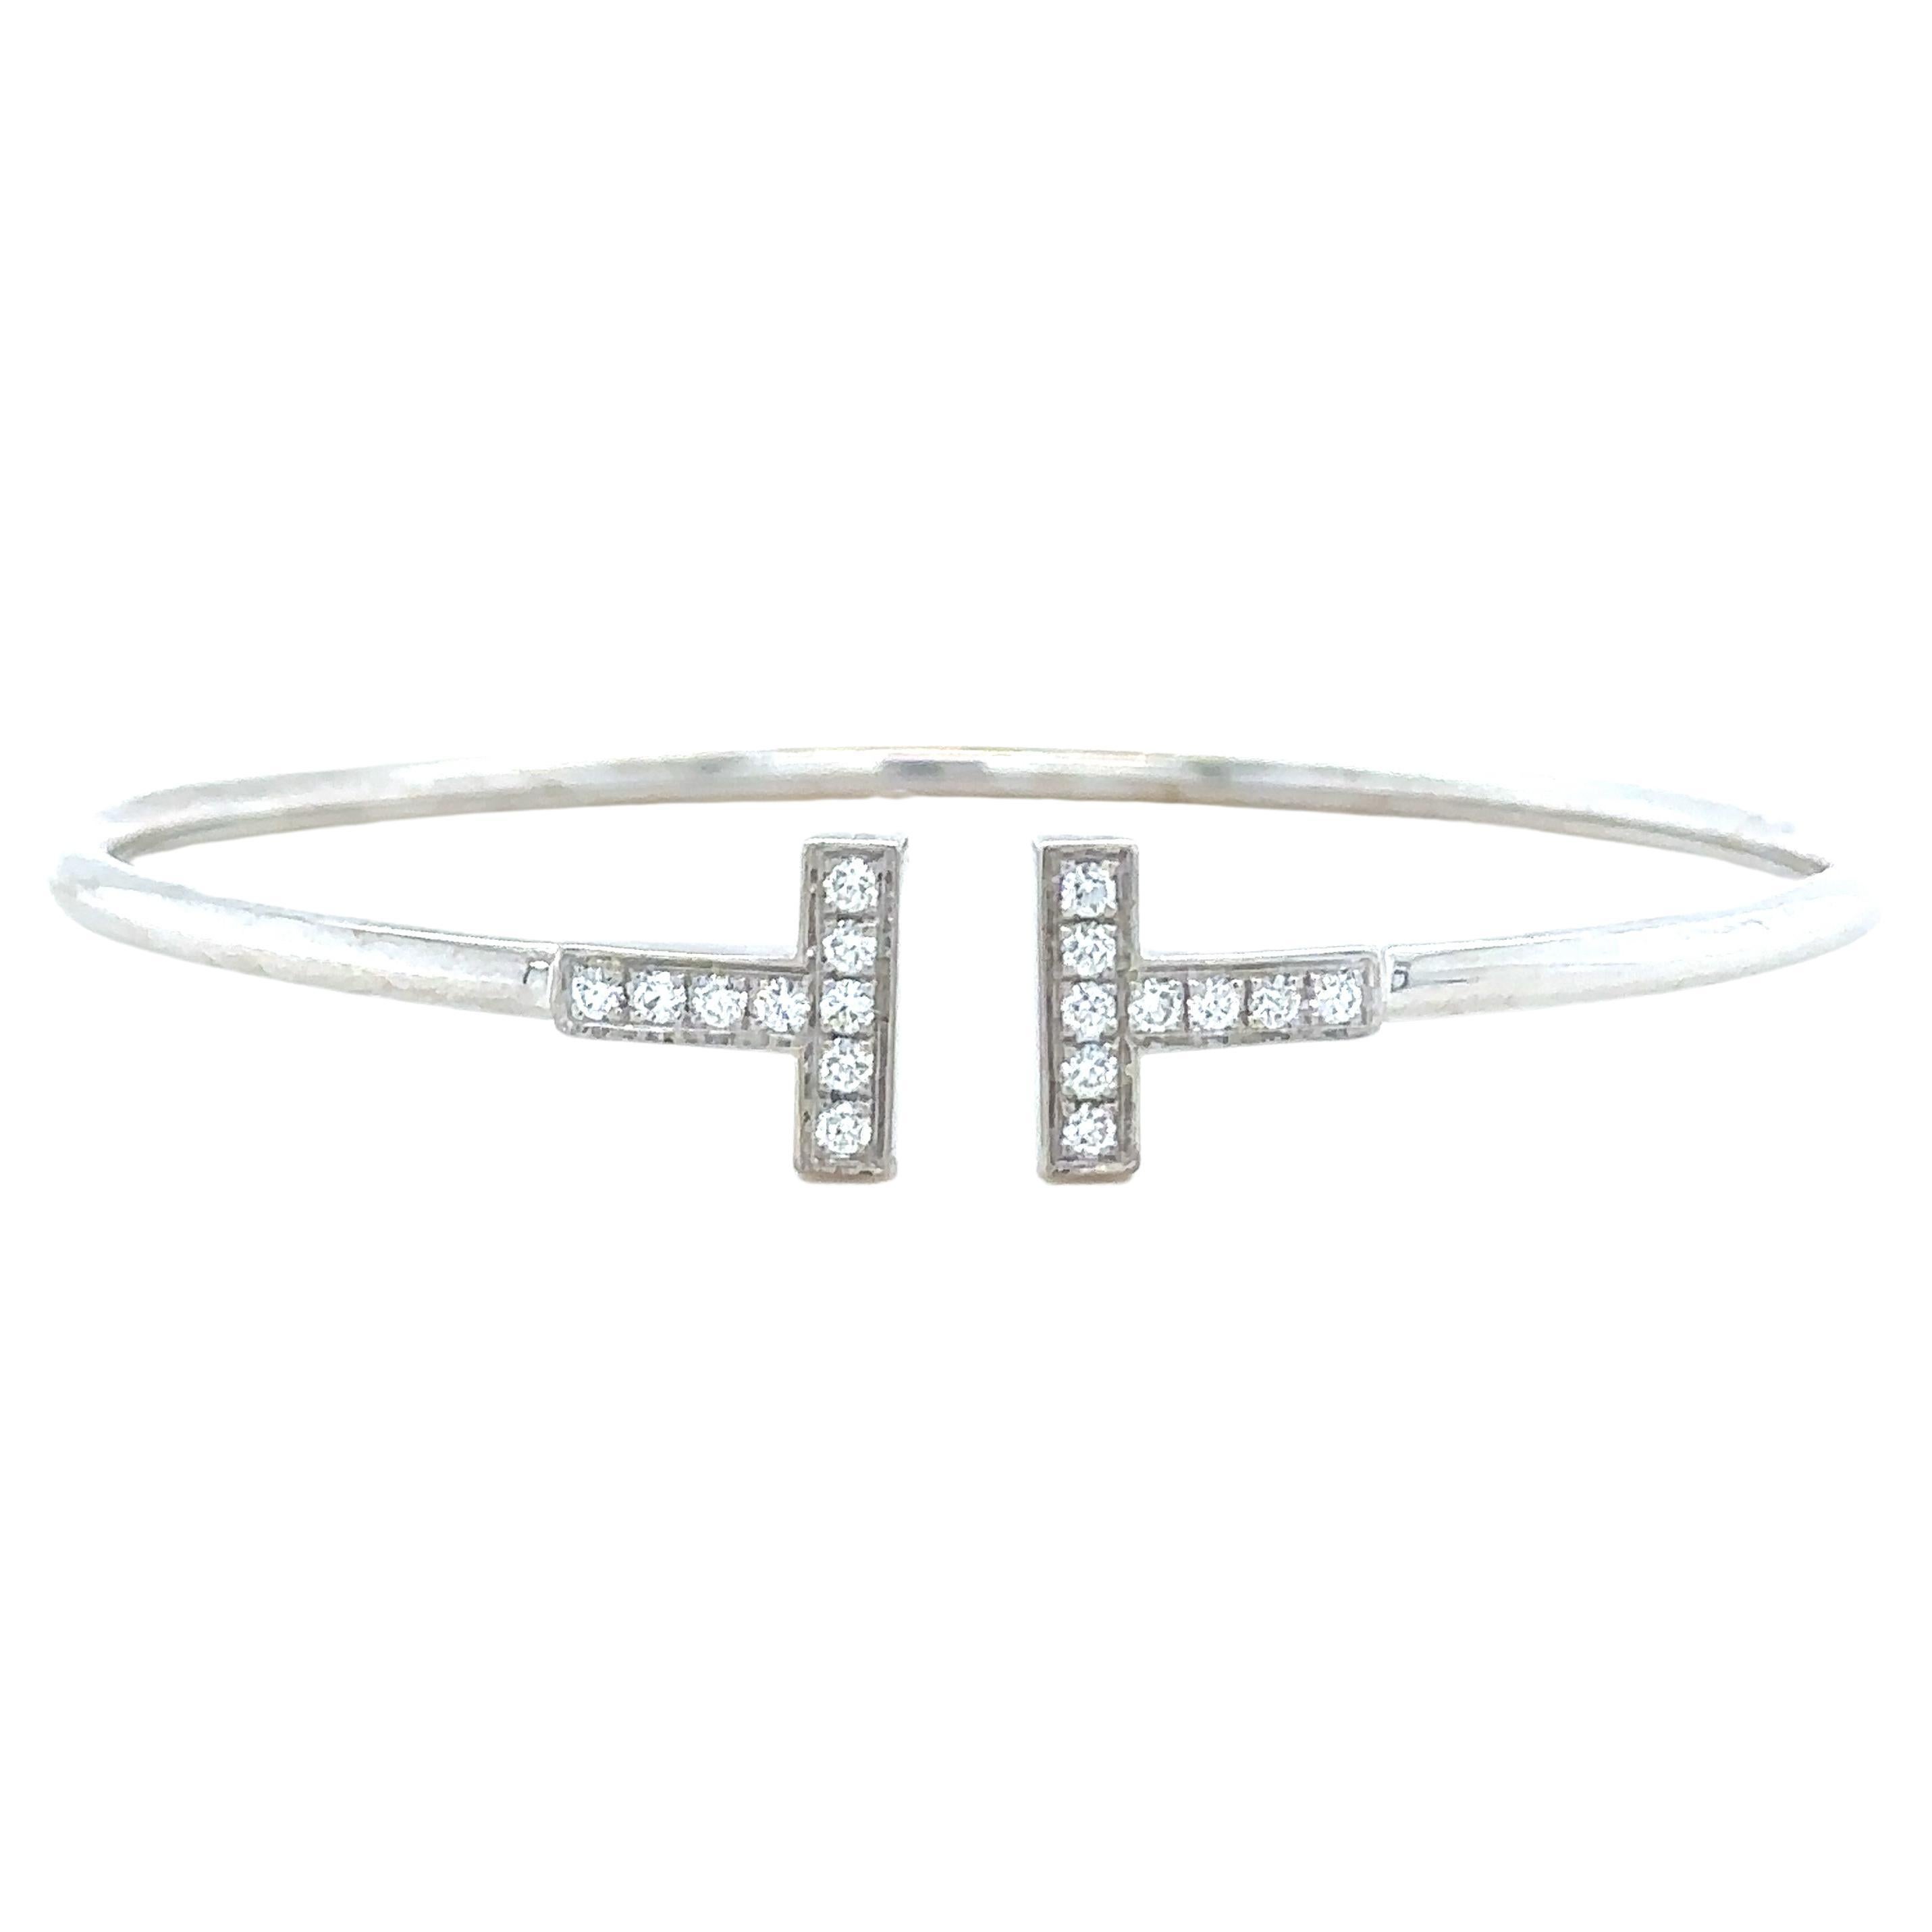 Tiffany & Co T Diamond Wire Bracelet 0.30ct